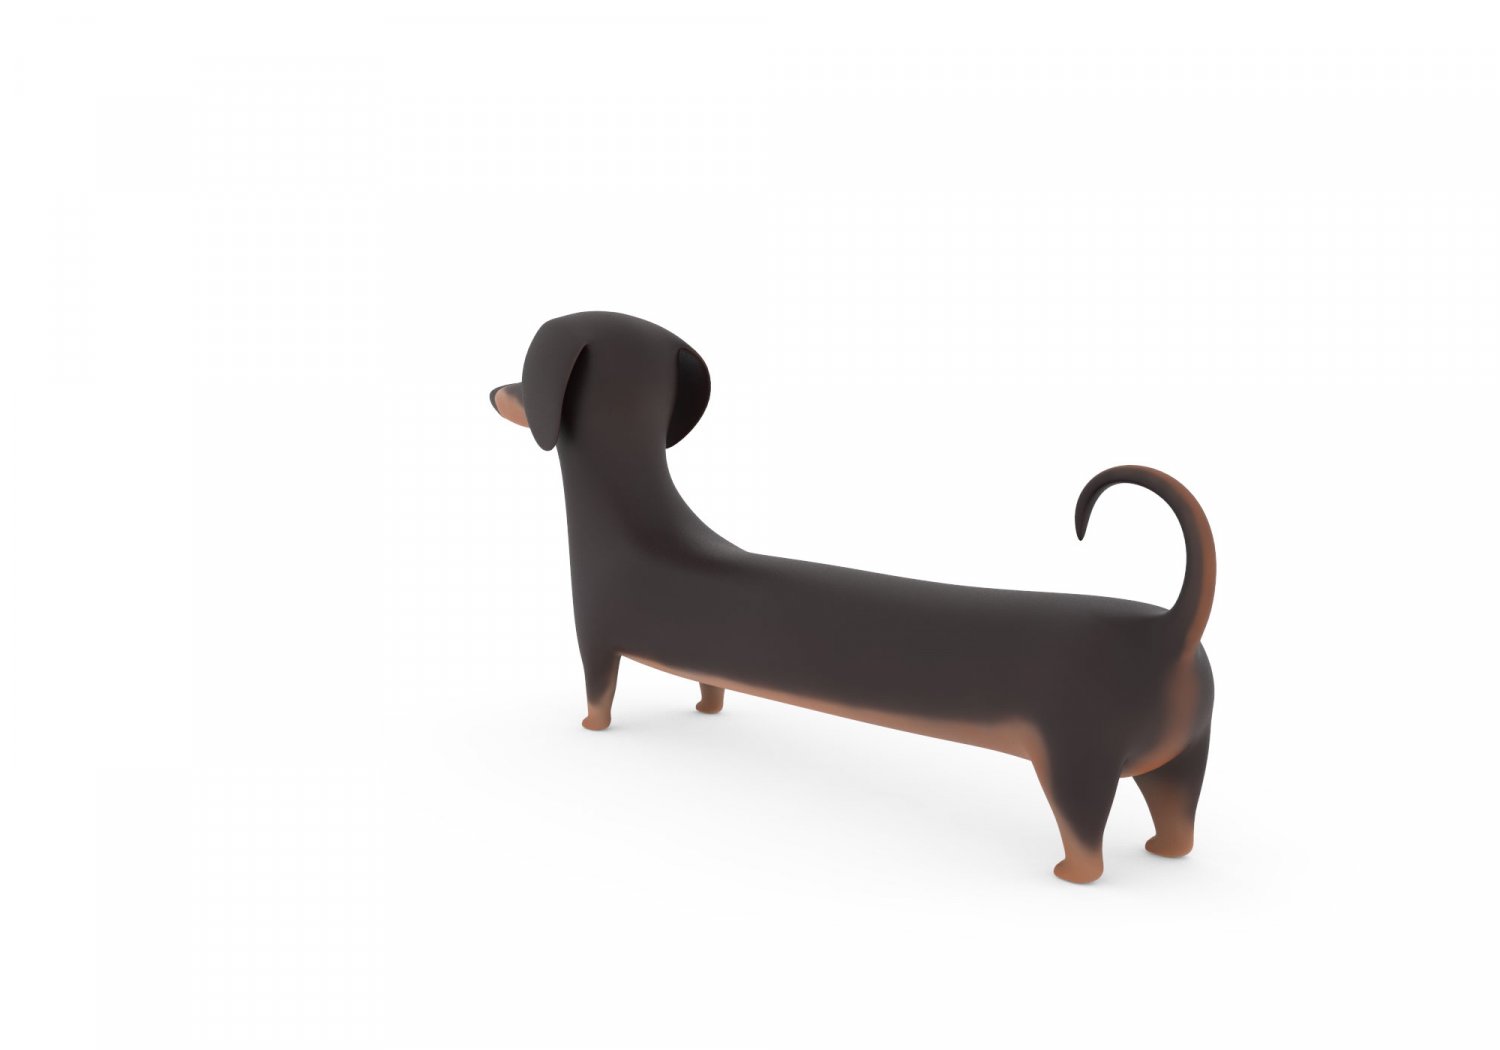 cute dog cartoon - dachshund 3D Model in Dog 3DExport